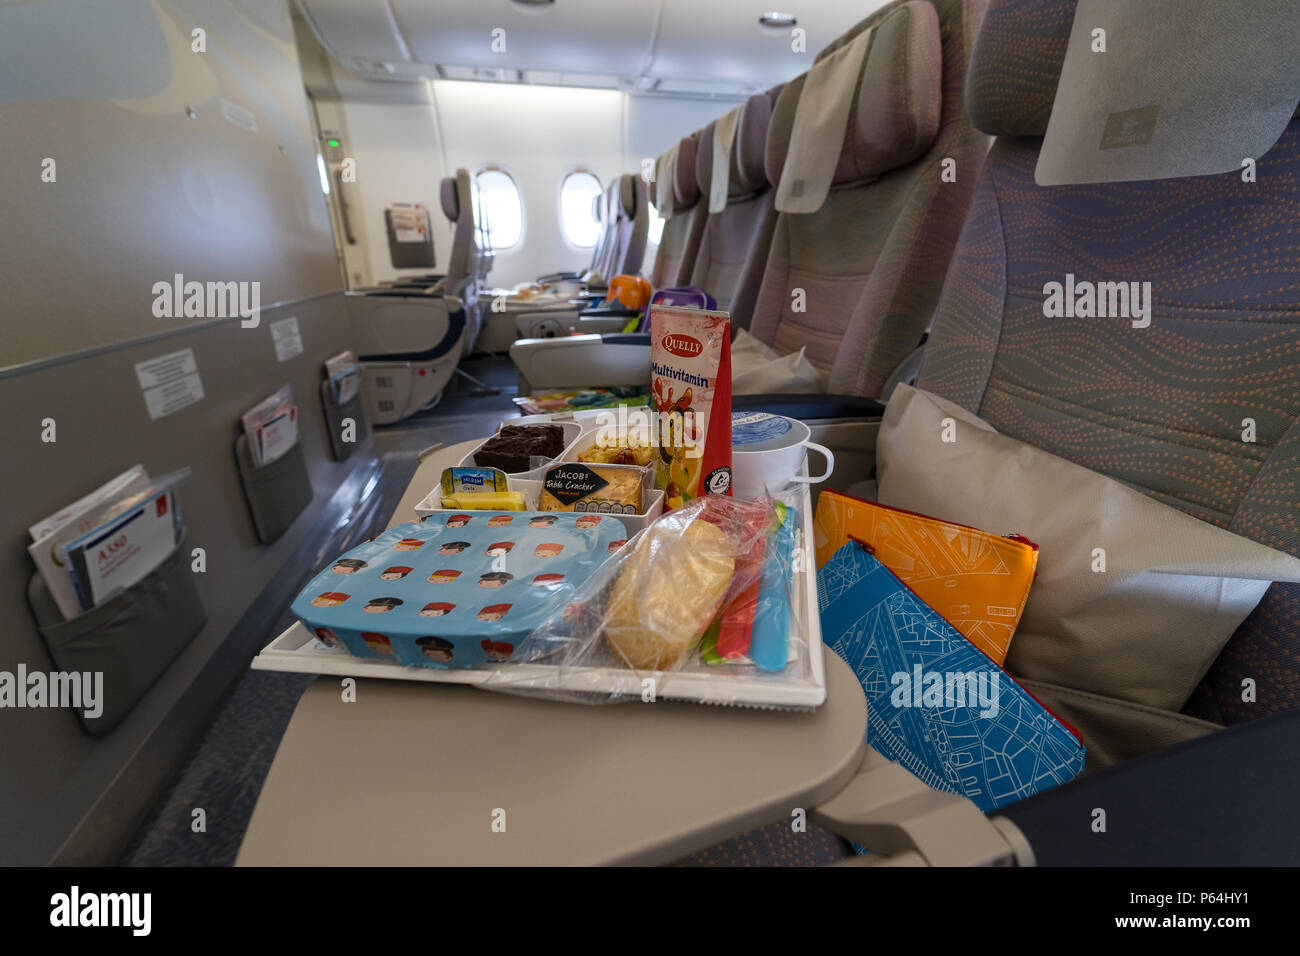 Emirates A380 Economy Class Stockfotos Emirates A380